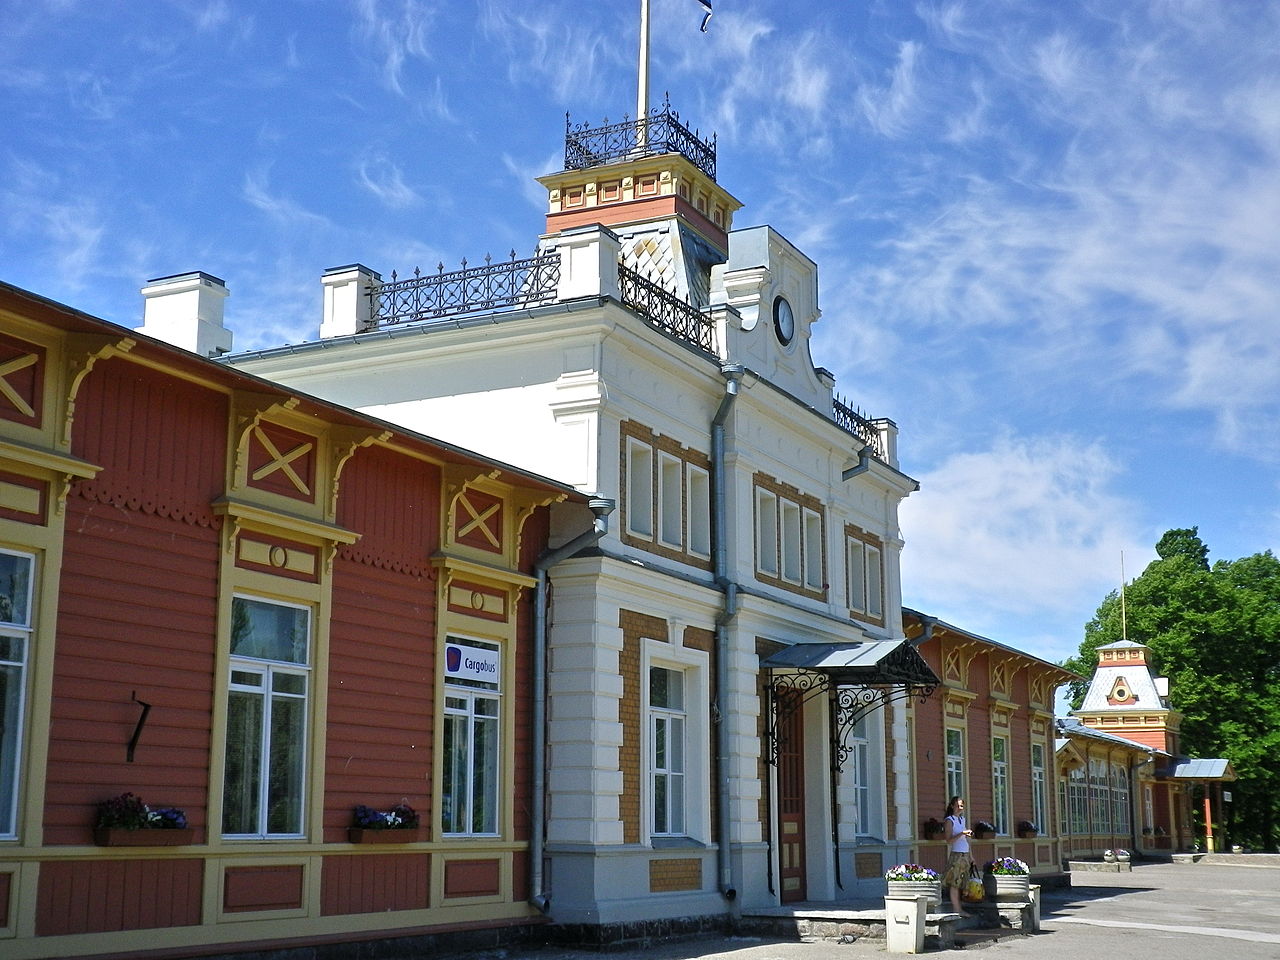 Haapsalu railway station